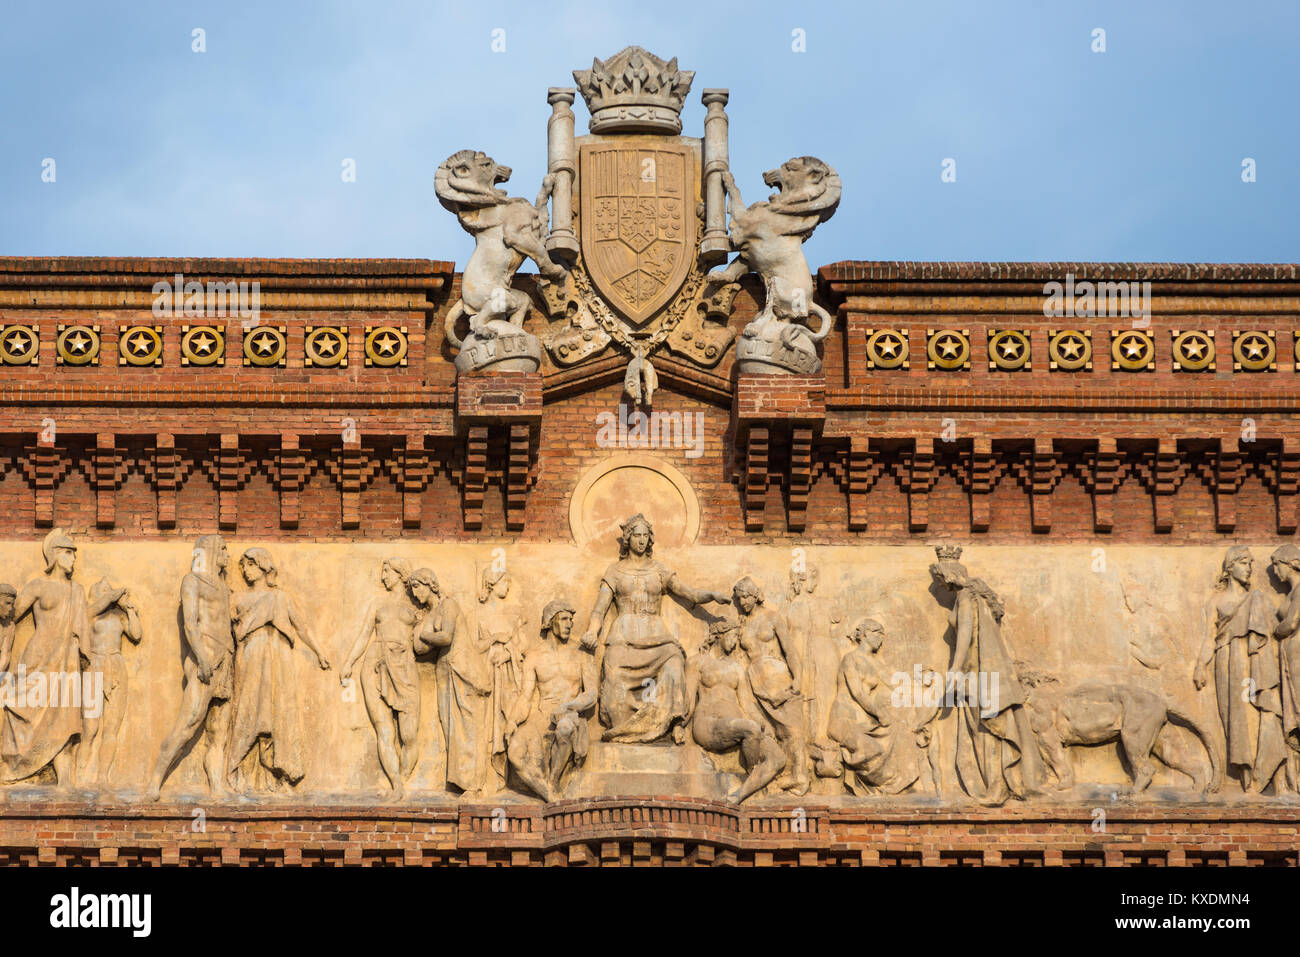 Dettaglio del Arc de Triomf, arco trionfale,in Passeig Lluis Companys, Barcellona, in Catalogna, Spagna. Foto Stock